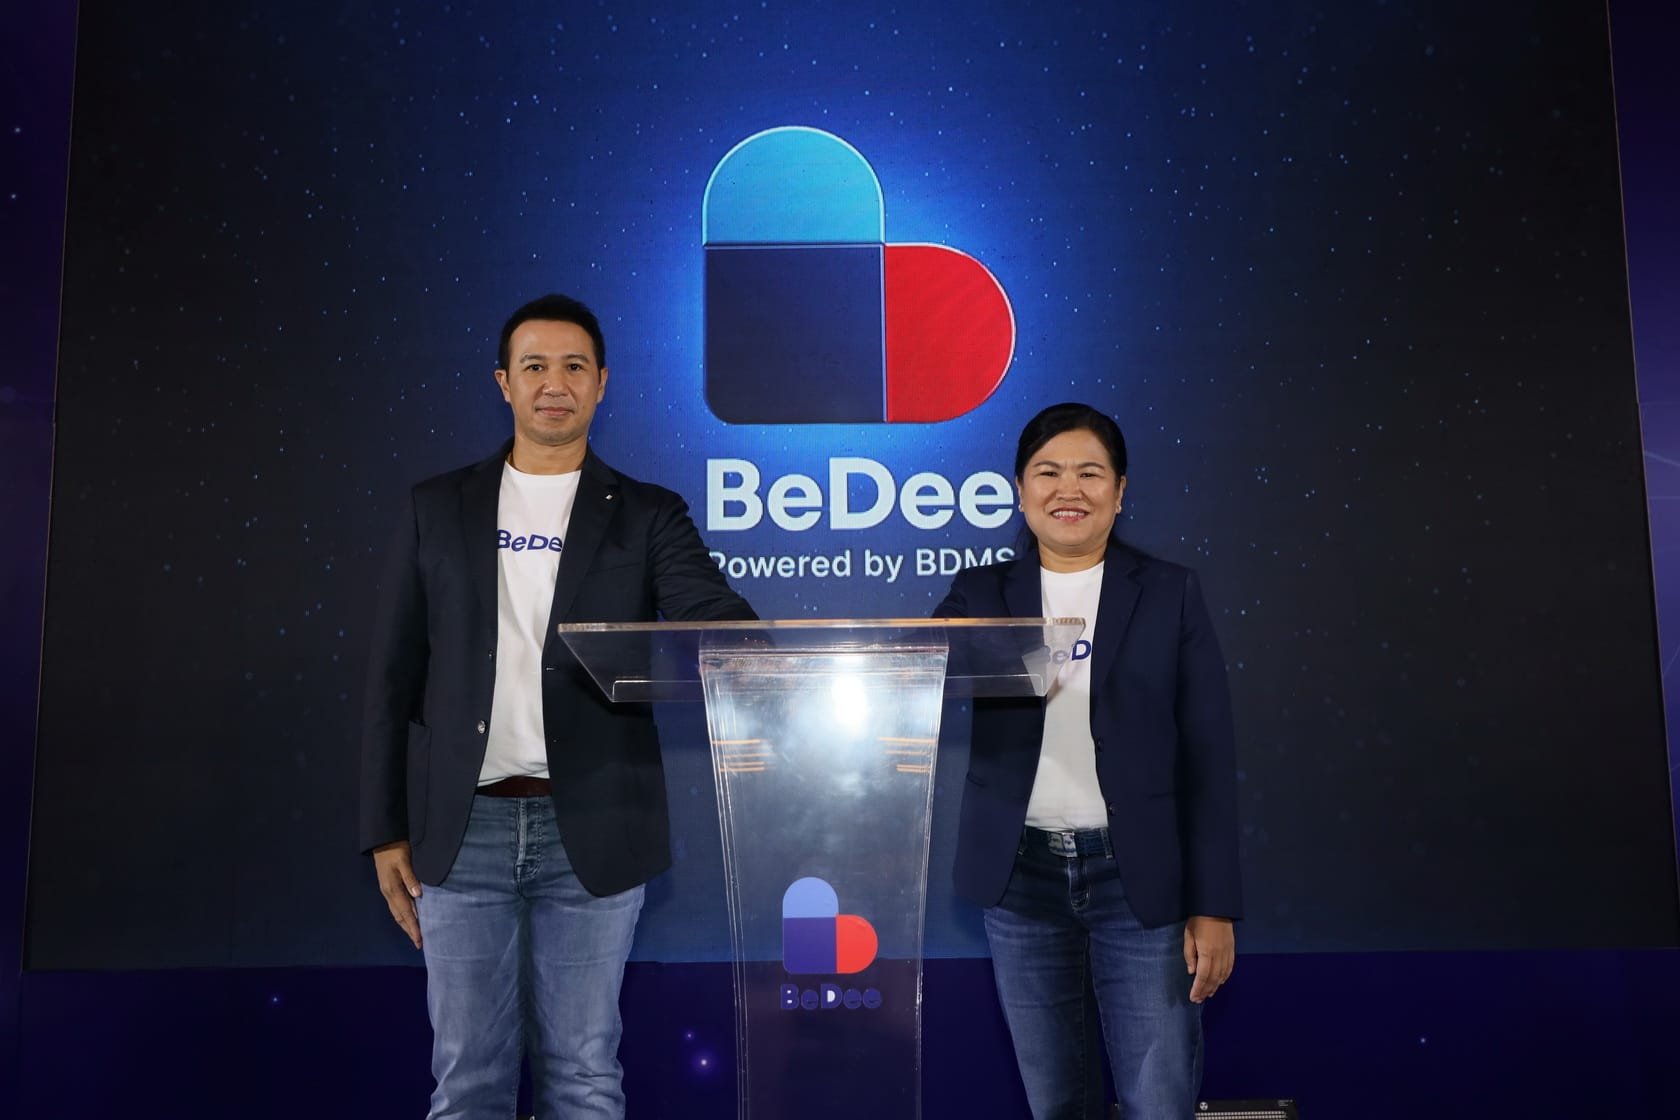 BDMS เปิดโปรเจ็คยักษ์ แอปพลิเคชัน "BeDee" แอปสุขภาพครบวงจรหนึ่งเดียว รองรับลูกค้าคนไทย-ต่างชาติ